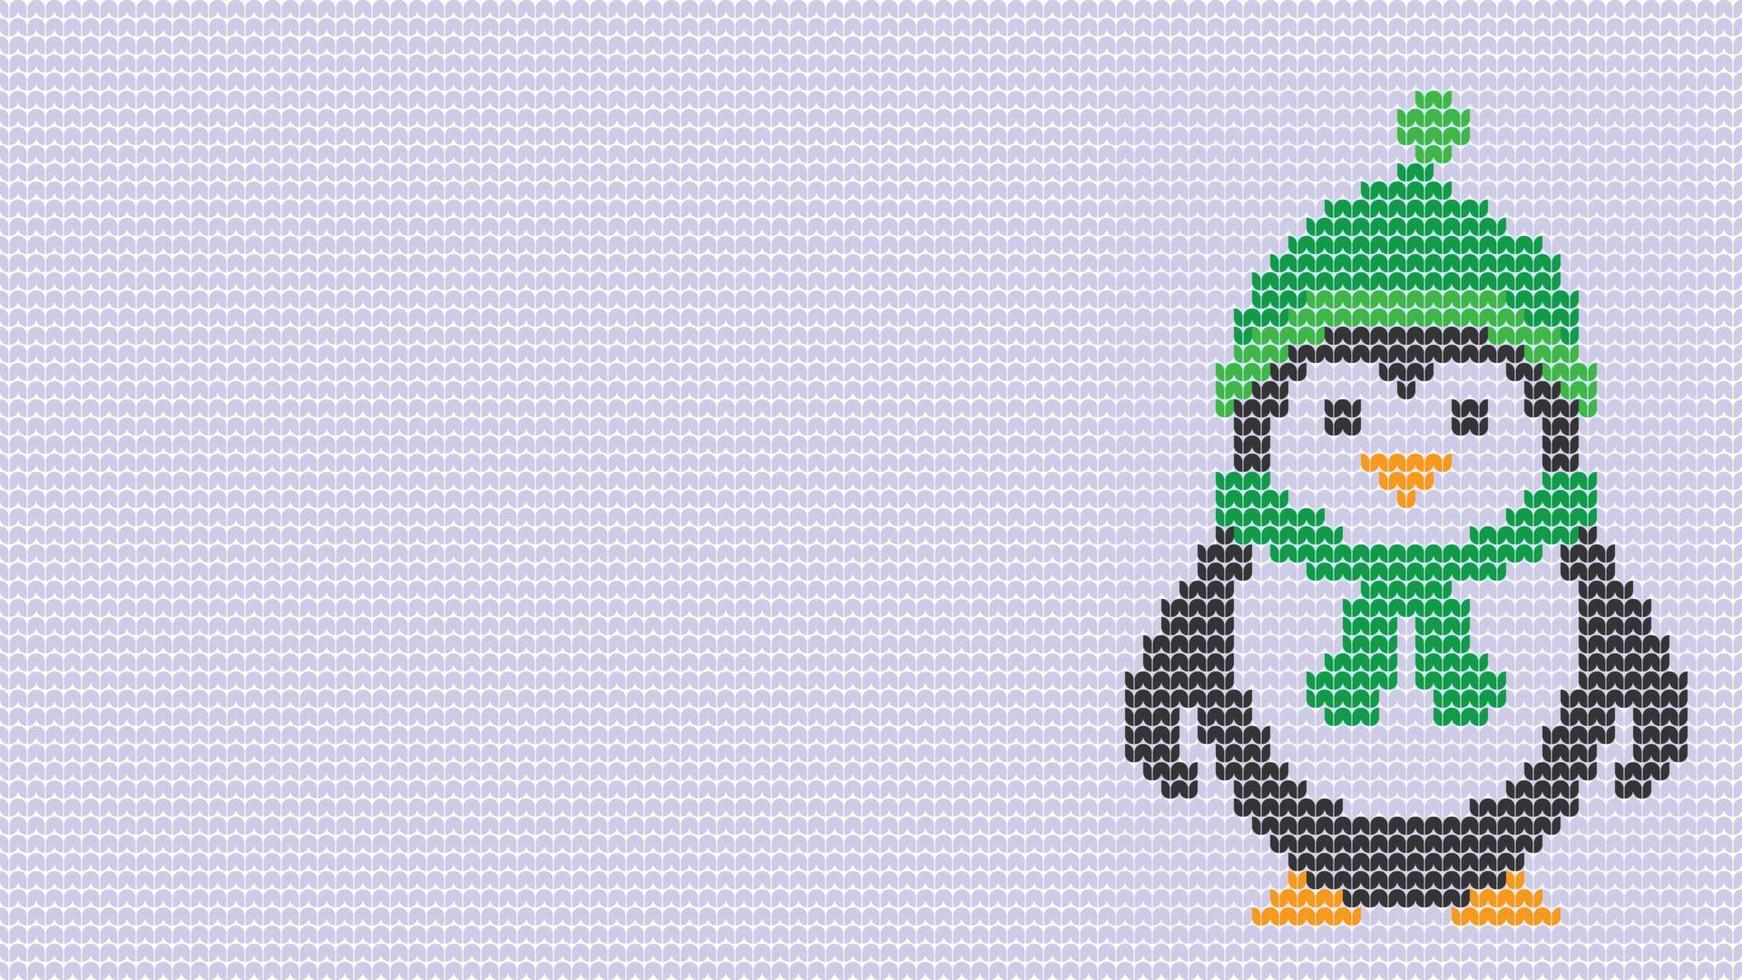 tricoter une bordure de pingouin à motif harmonieux sur fond blanc, ampoule à tricoter bordure de motif ethnique joyeux noël et joyeux jours d'hiver affiche vectorielle vecteur